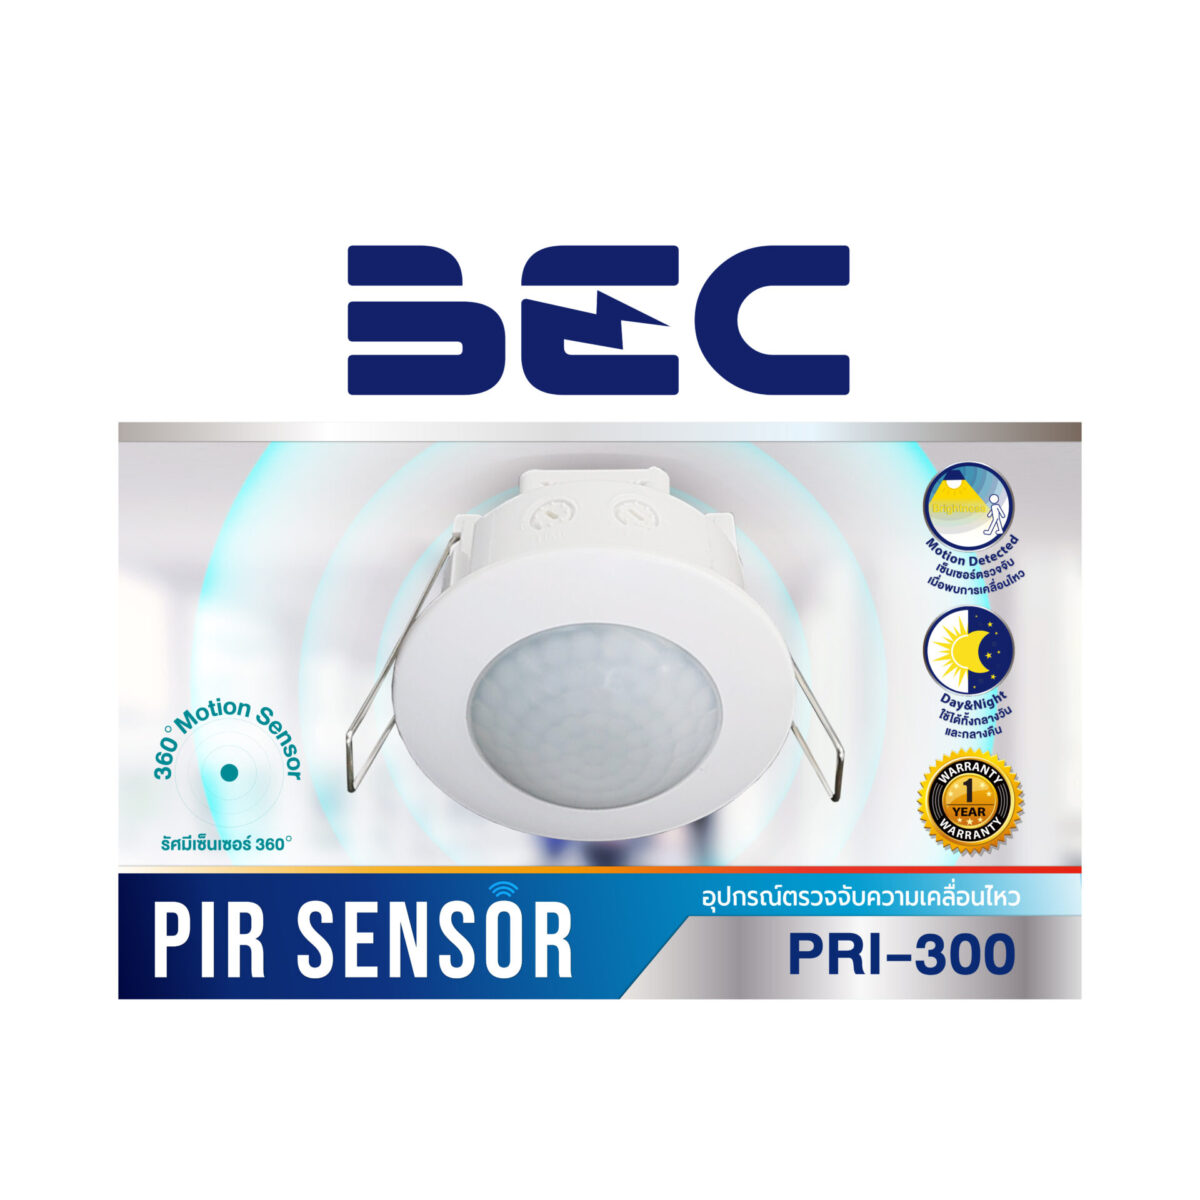 อุปกรณ์ตรวจจับความเคลื่อนไหวฝังเพดาน PIR Sensor รุ่น PRI-300